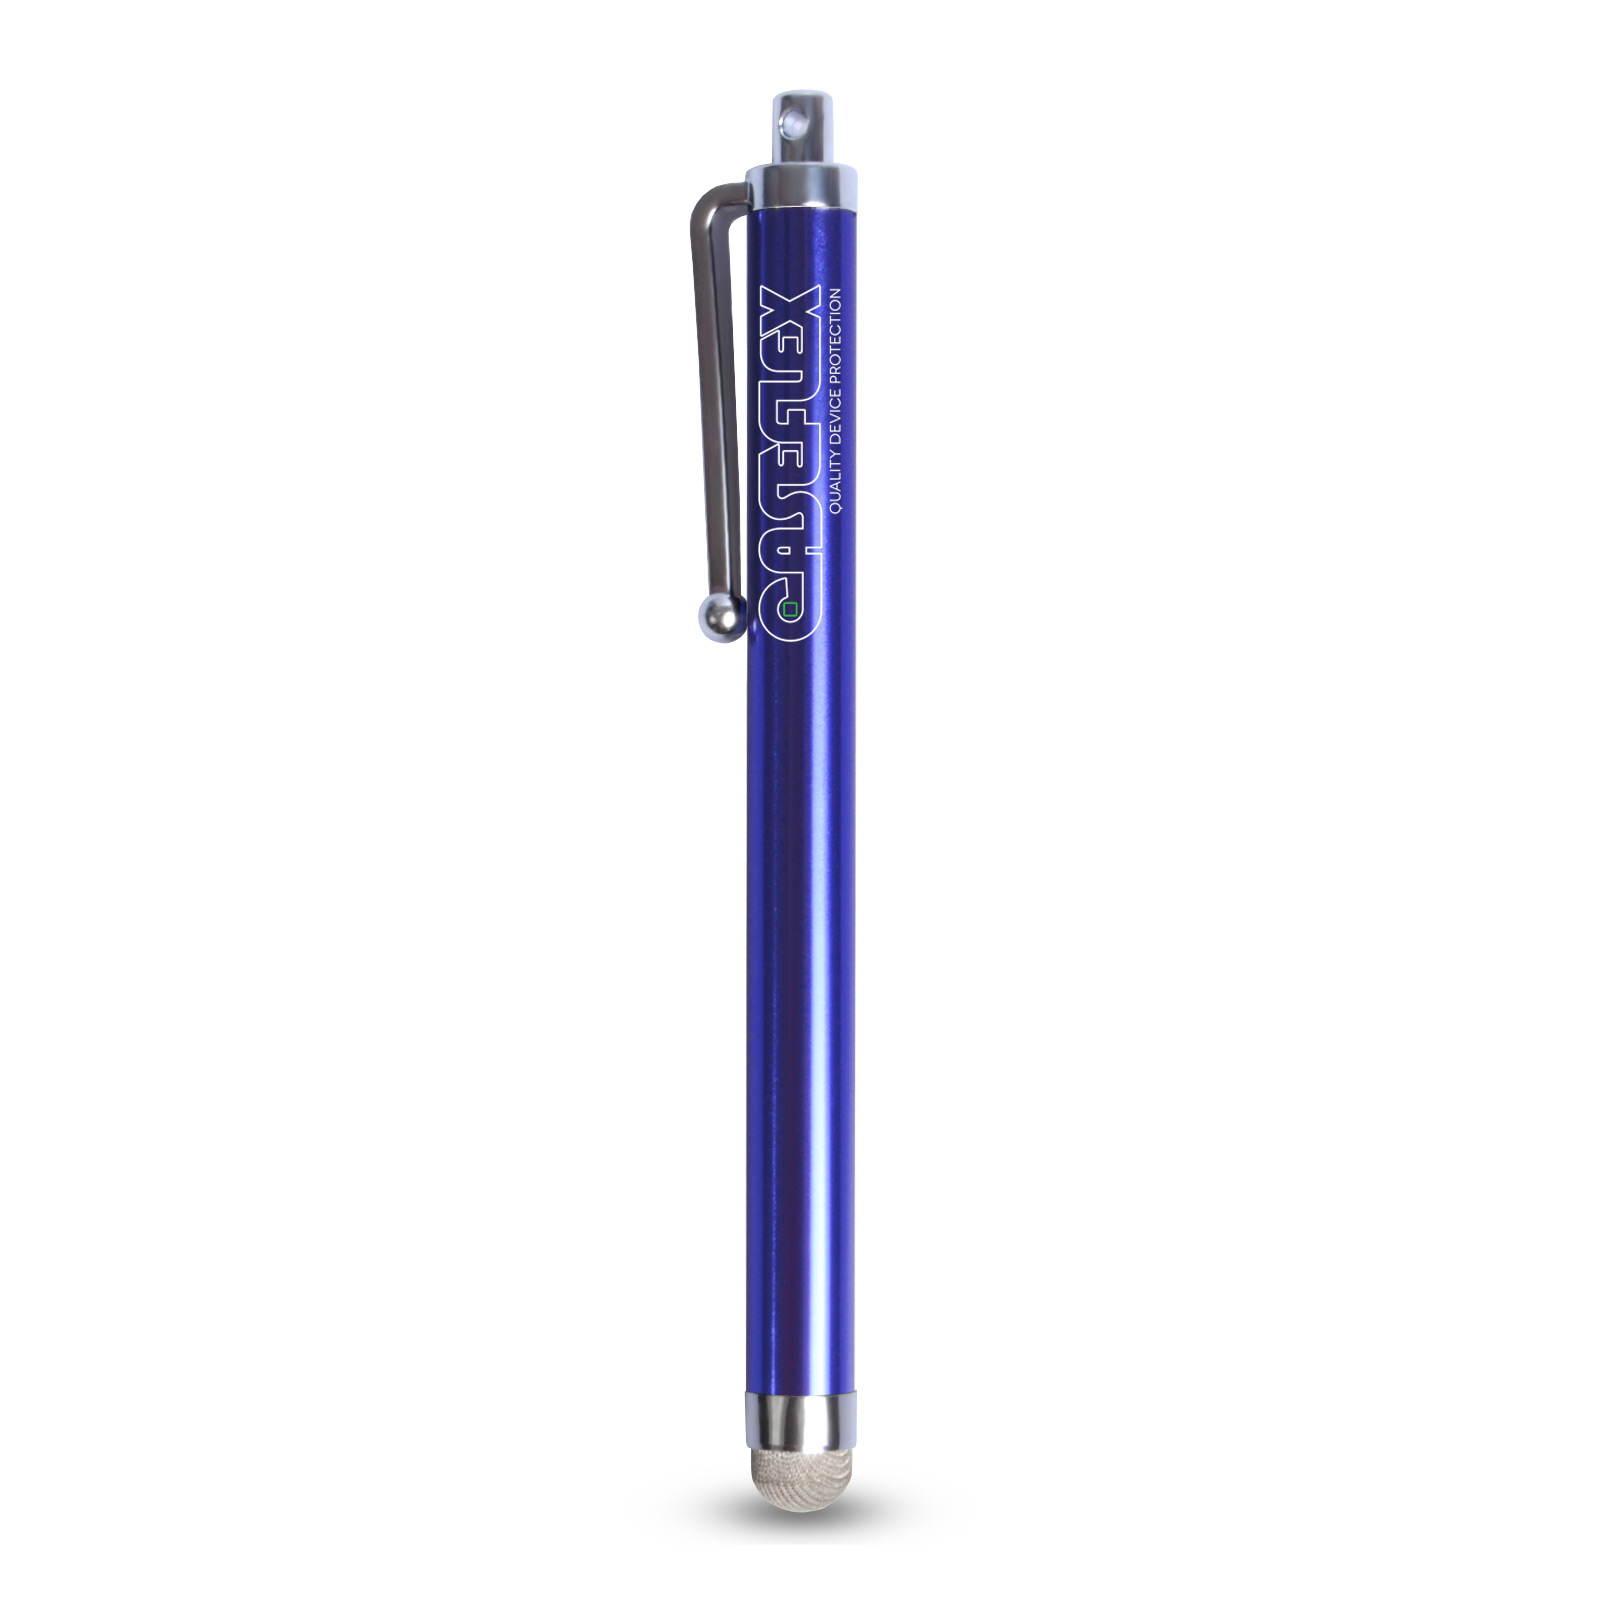 Caseflex Stylus Pen - Dark Blue